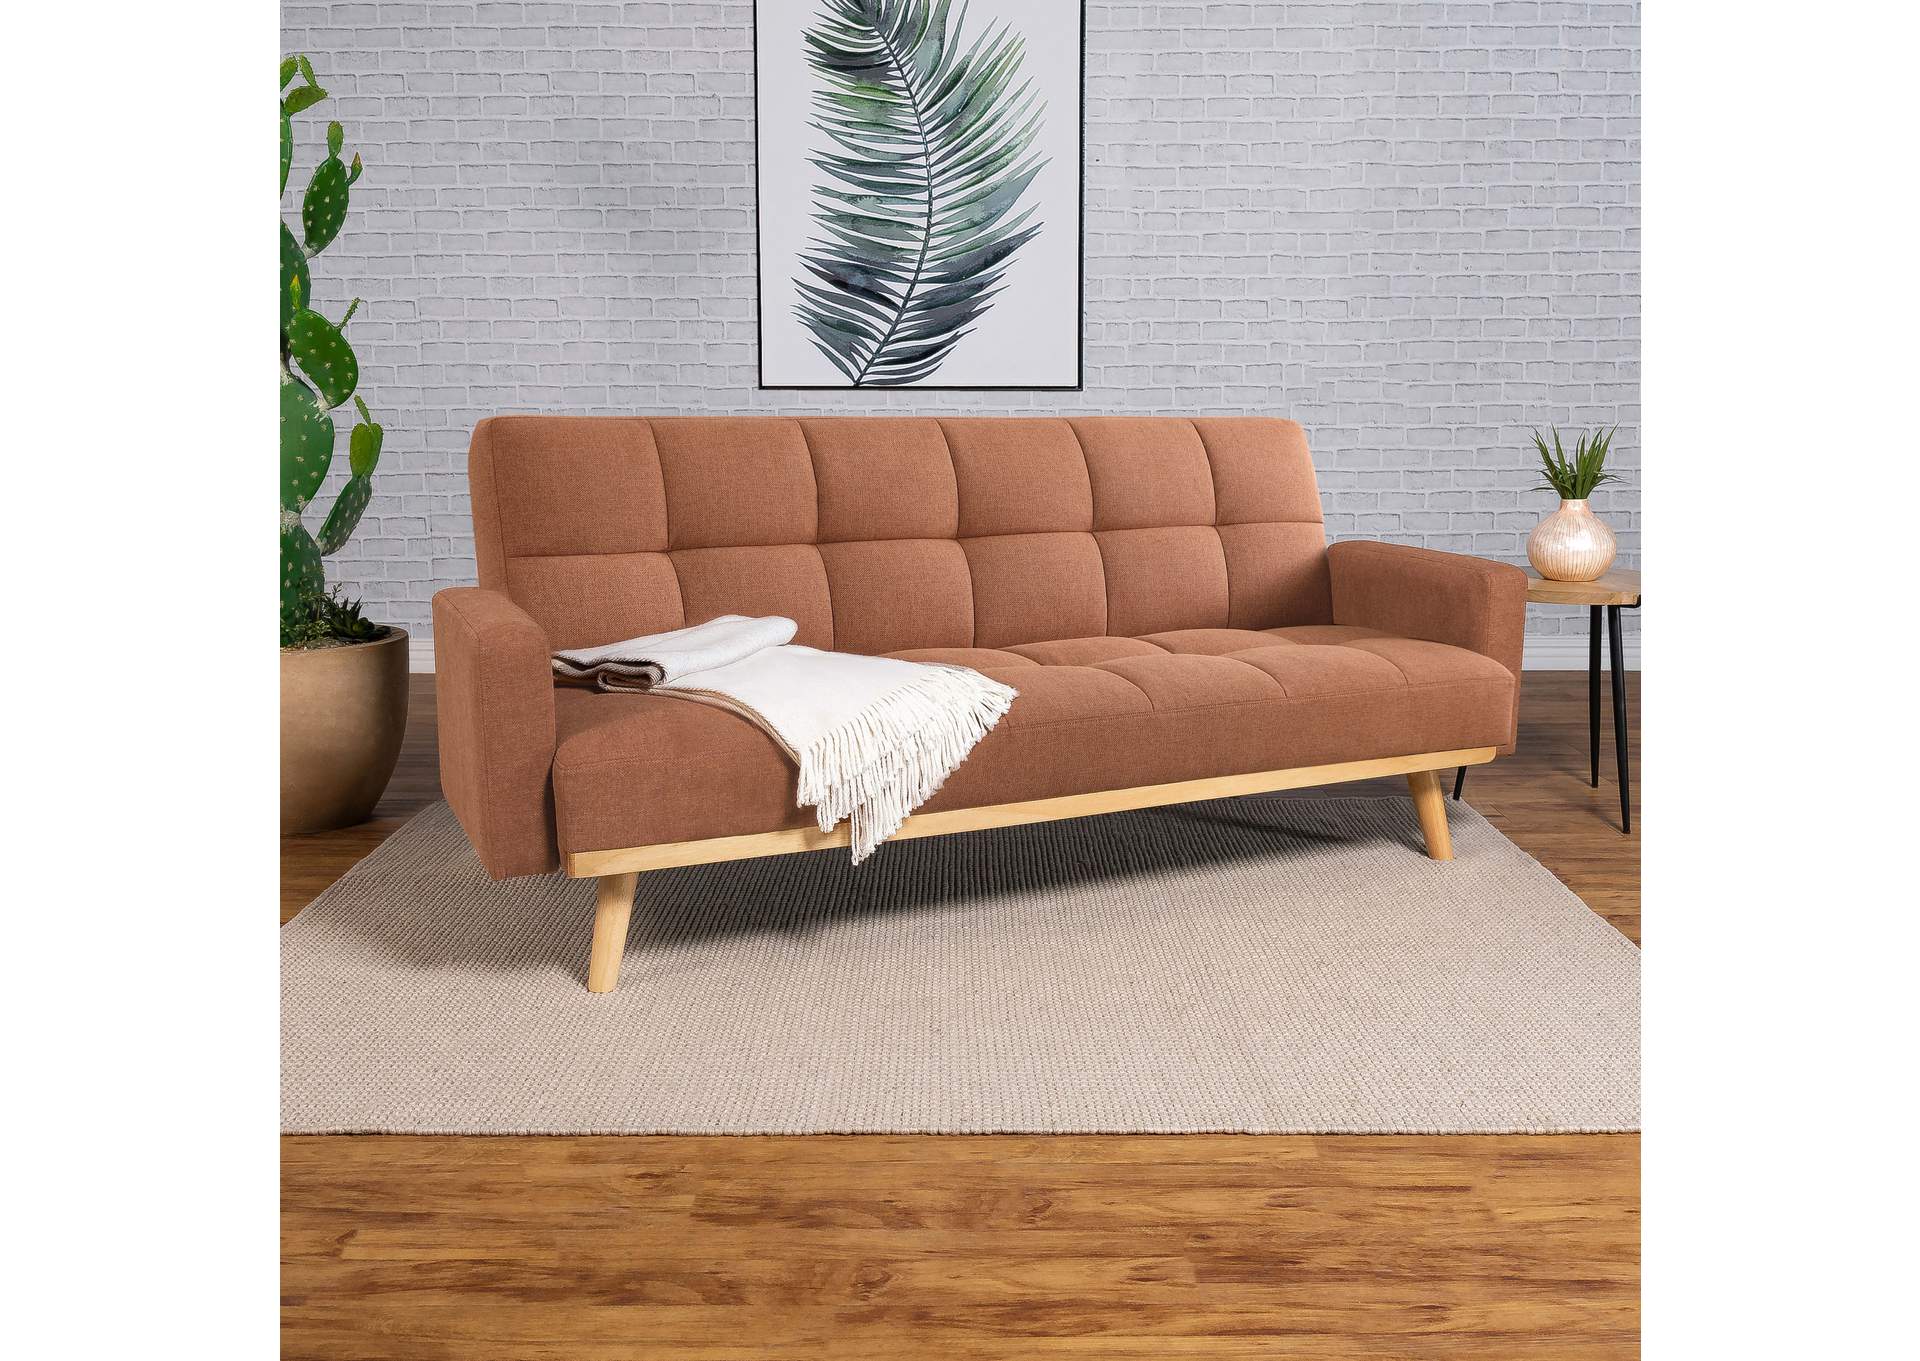 SOFA BED,Coaster Furniture